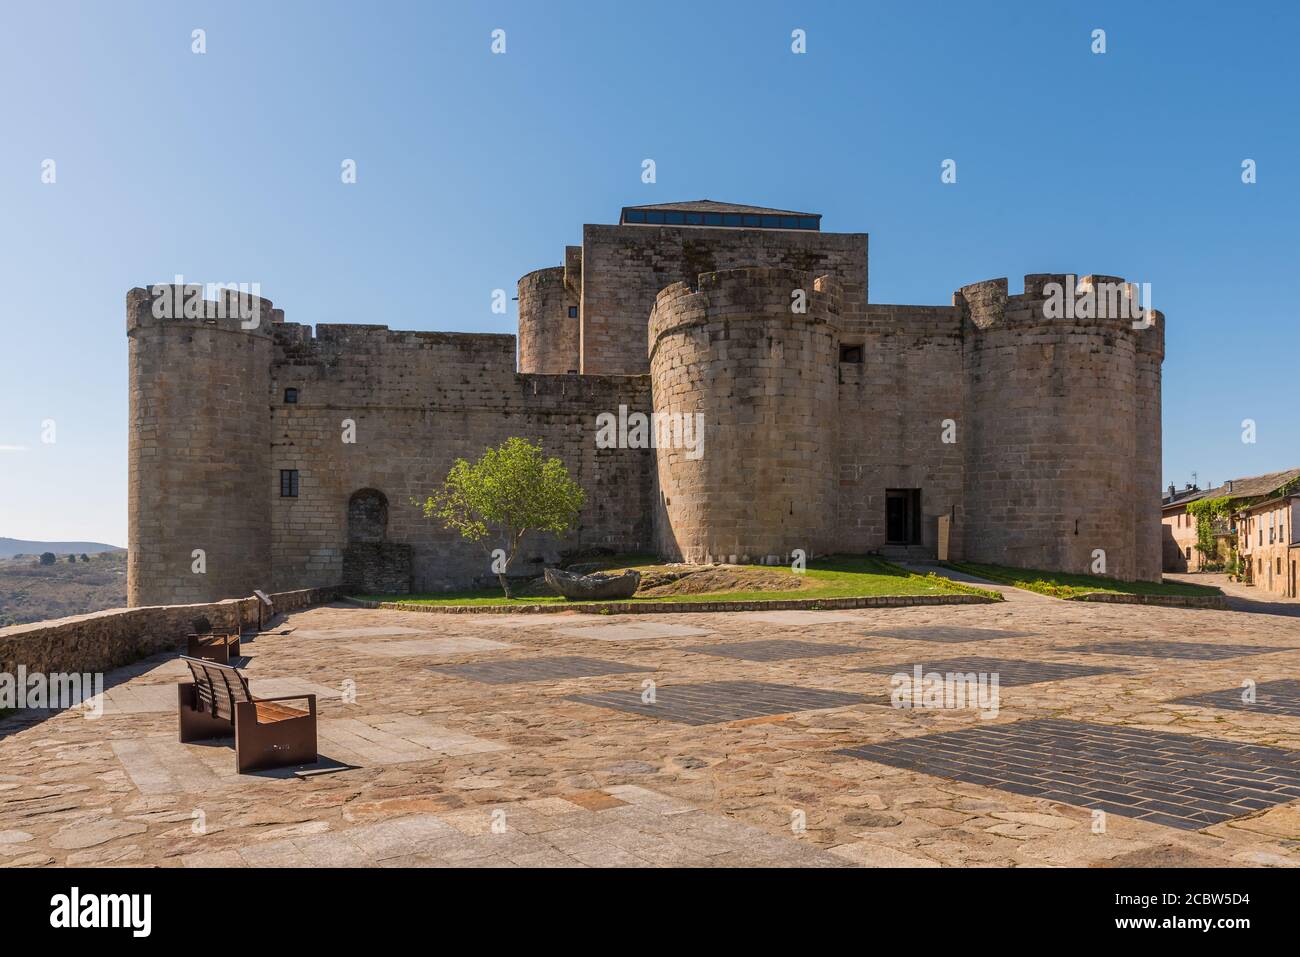 Castelo de los Condes de Benavente Stock Photo